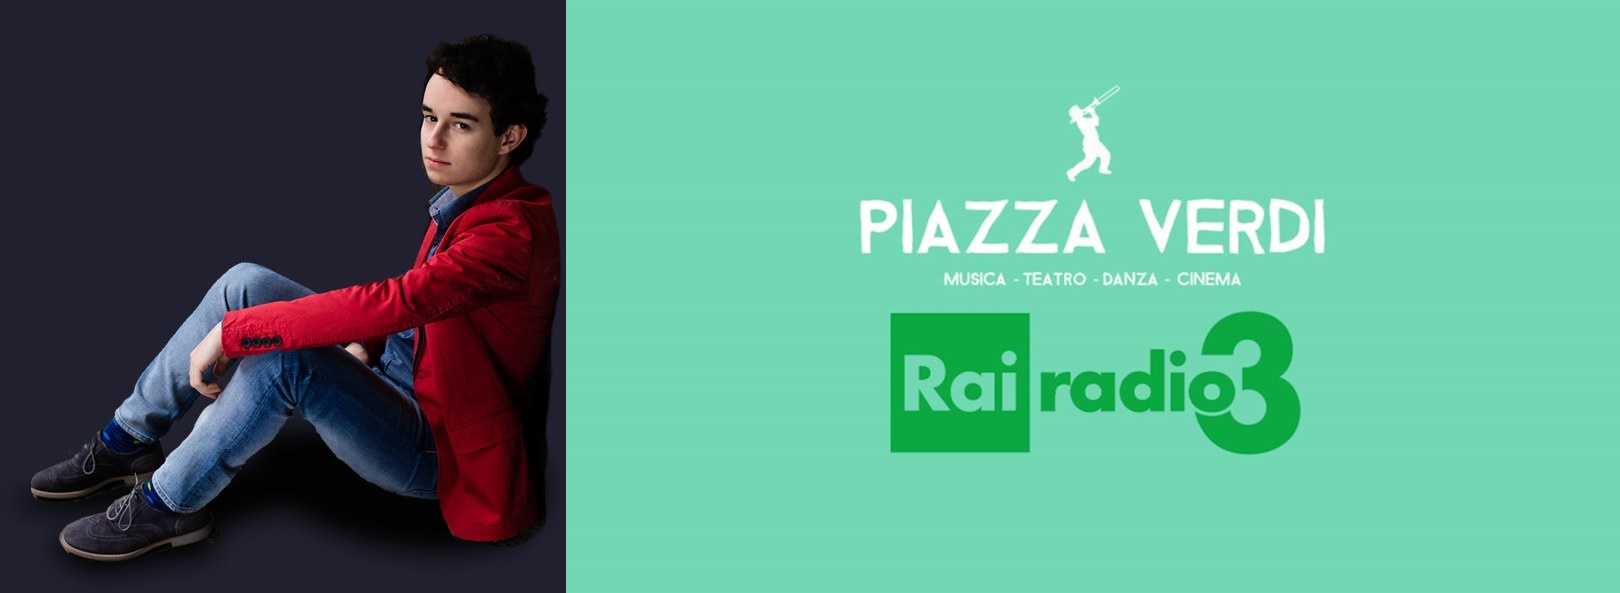 In diretta su Rai Radio Tre per la trasmissione Piazza Verdi il giovane pianista Axel Trolese